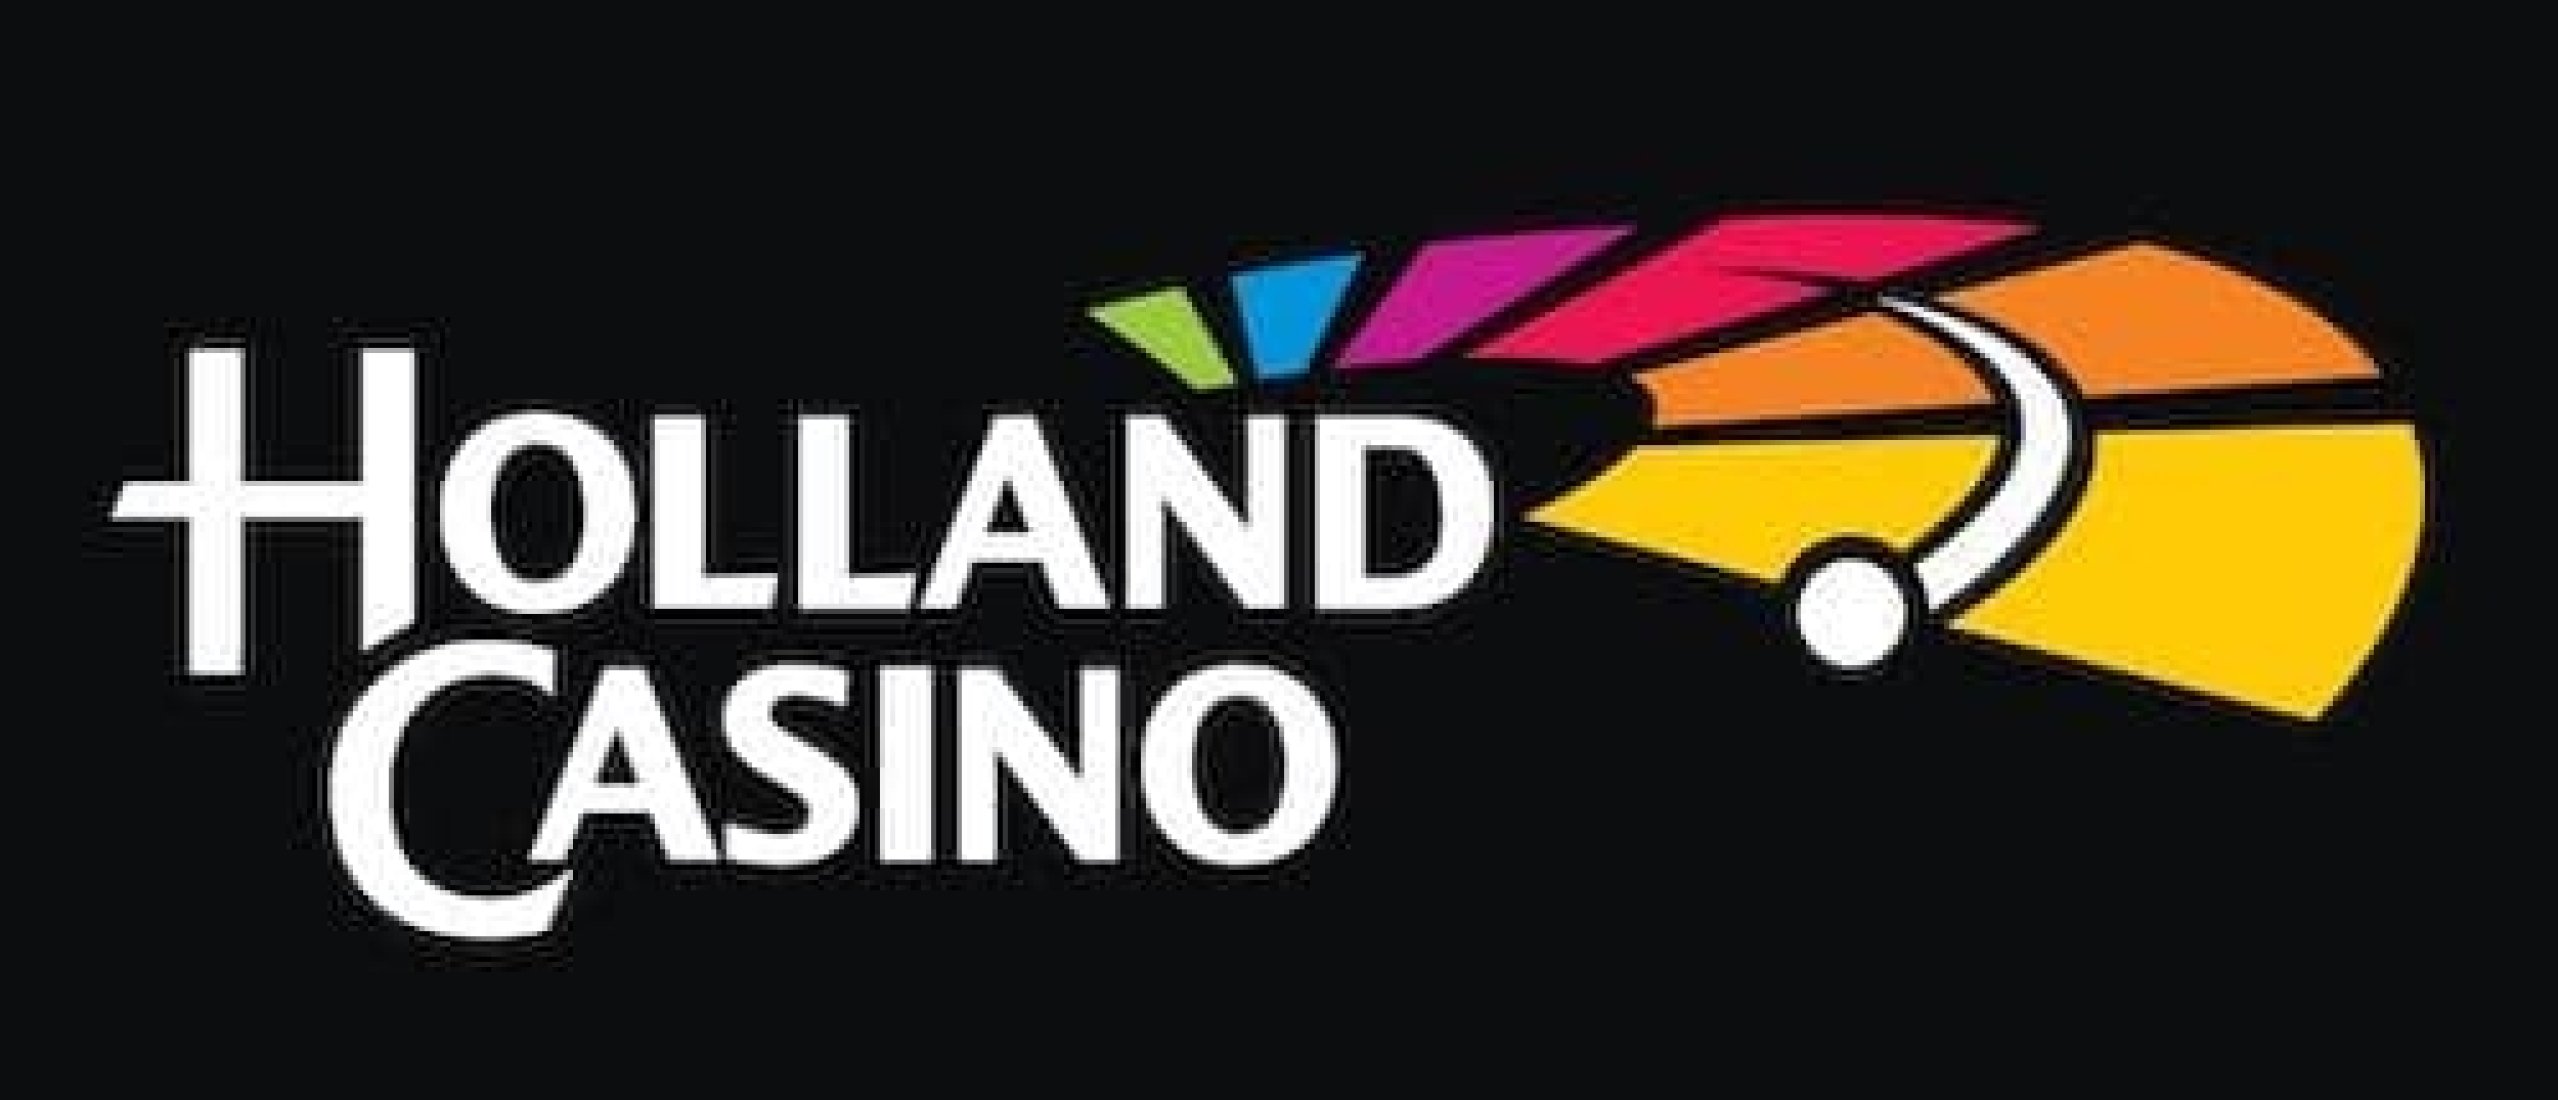 Is Holland Casino van de staat? Hoe zit dit precies?